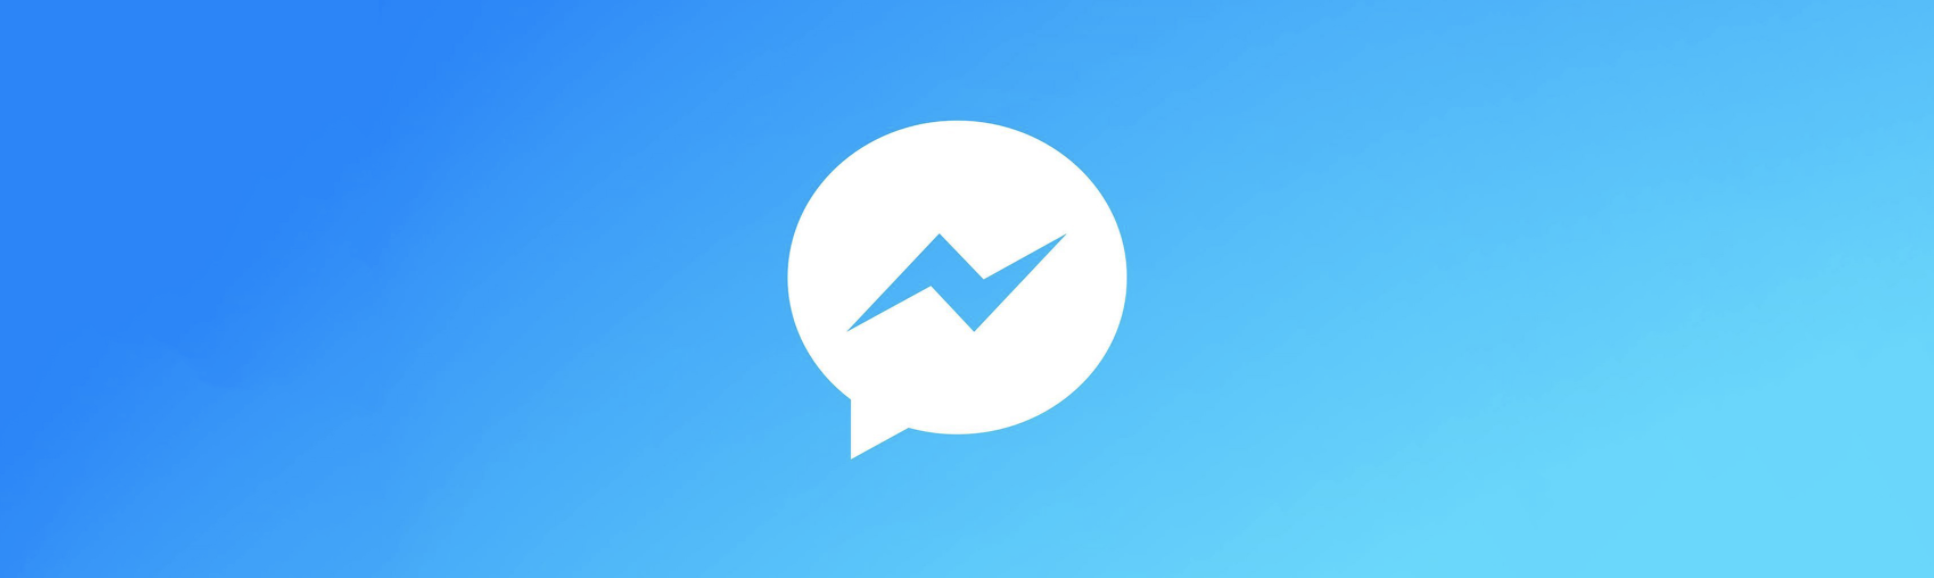 Icone de l'application messenger